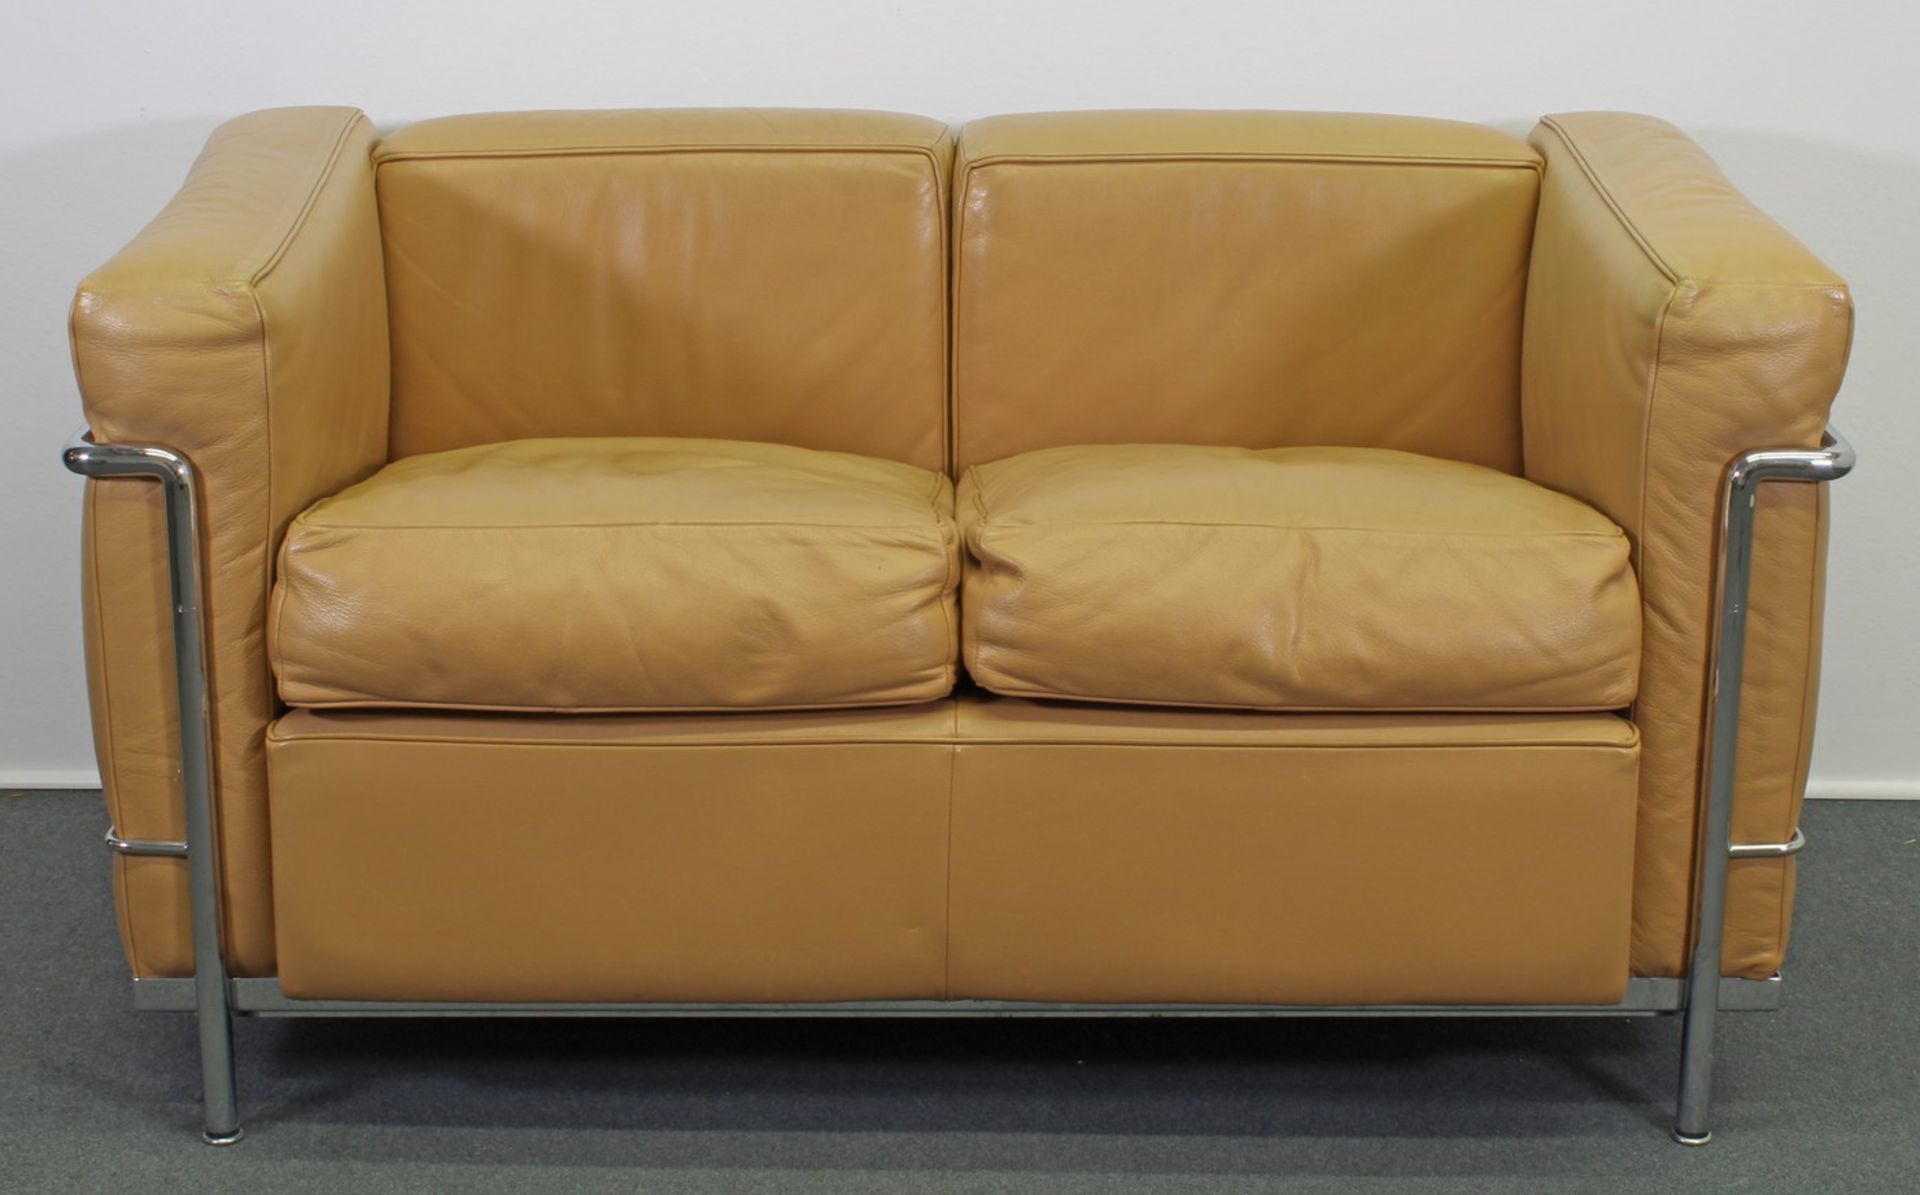 Zweisitzer-Sofa, Modell LC2 aus der Serie Grand Confort, Entwurf von Le Corbusier, Pierre